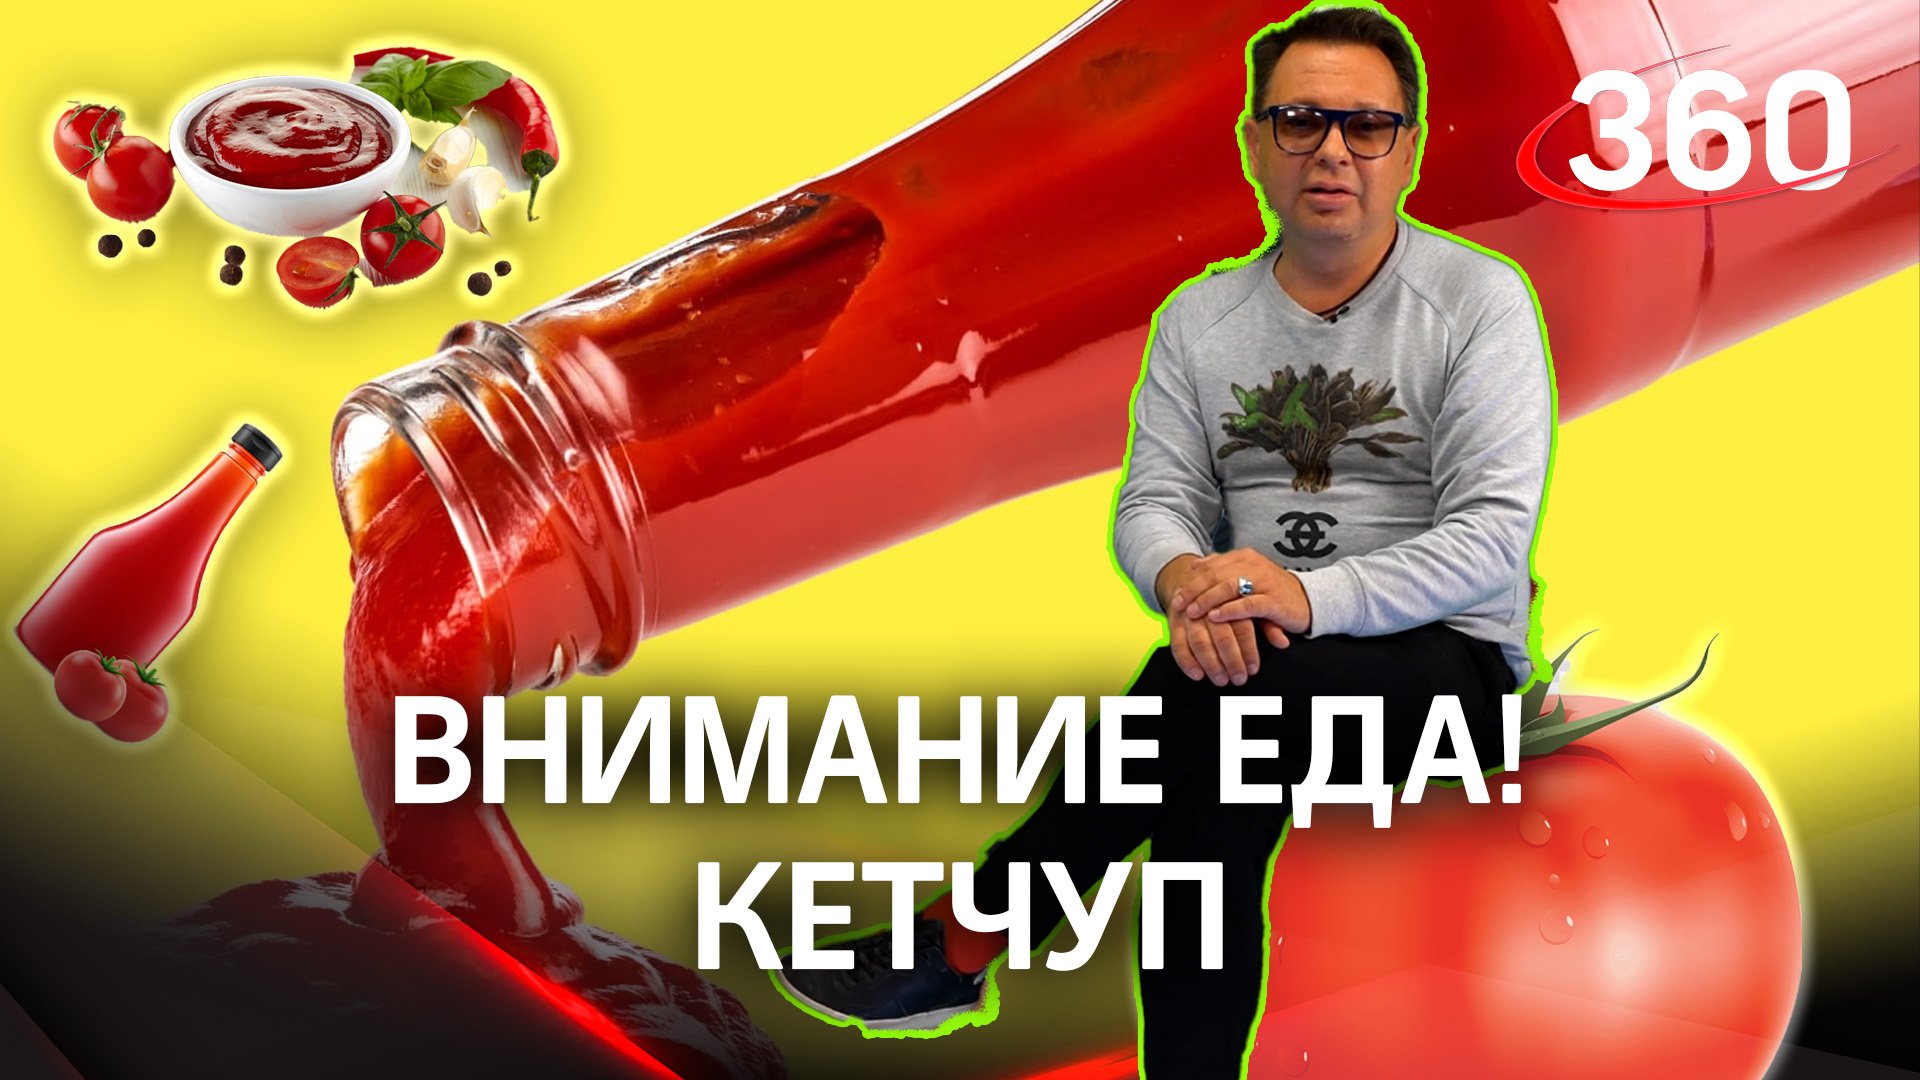 Лучший и натуральный кетчуп выбрал в рубрике "Внимание, еда!" Максим Беспалов